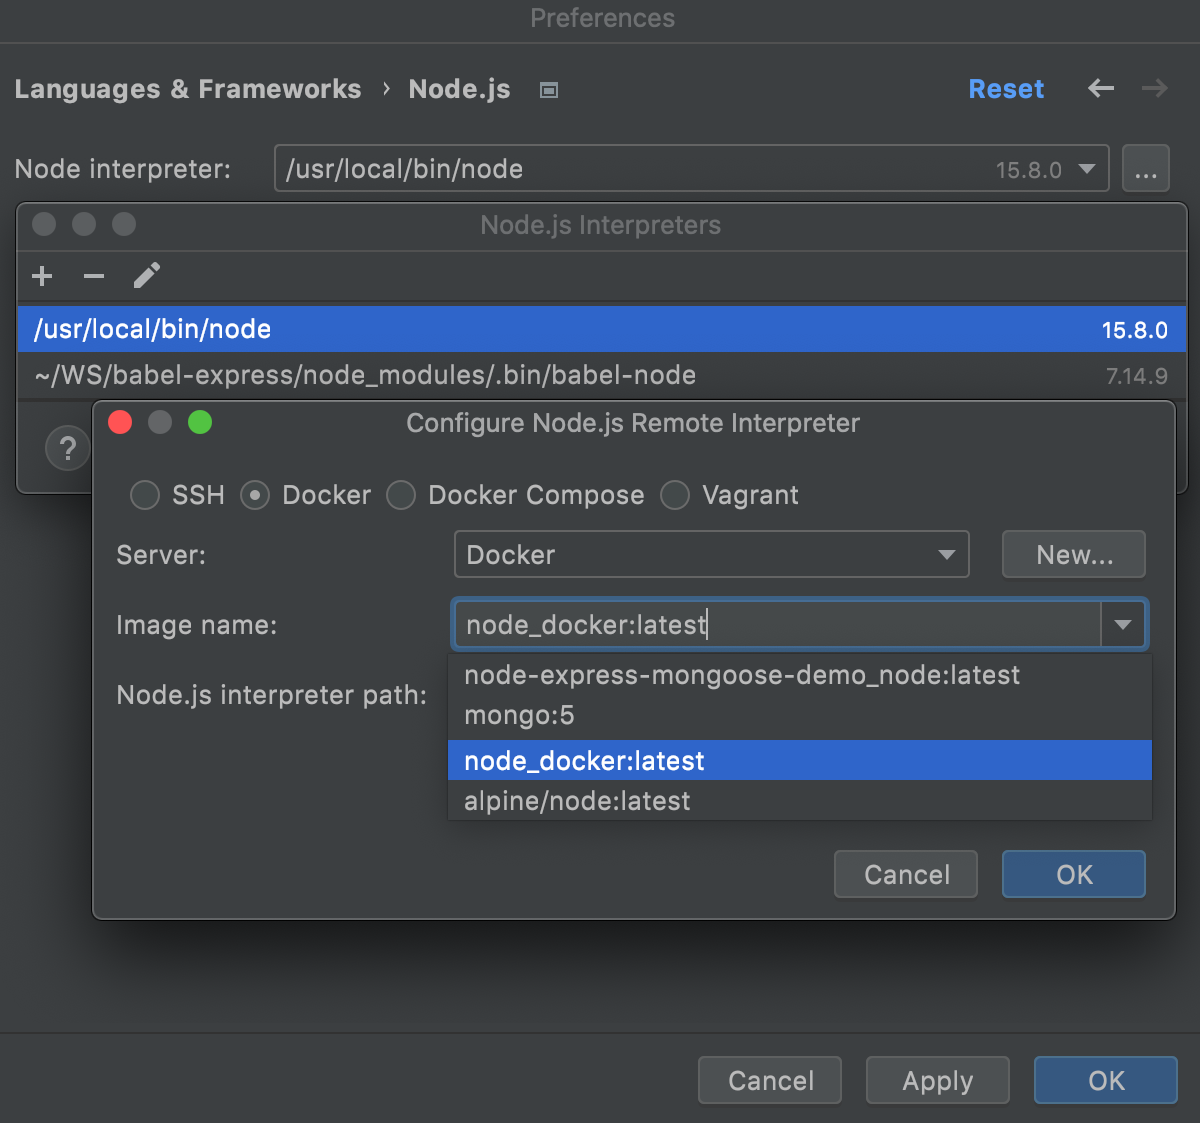 Configure Node.js interpreter in Docker container: select Docker image